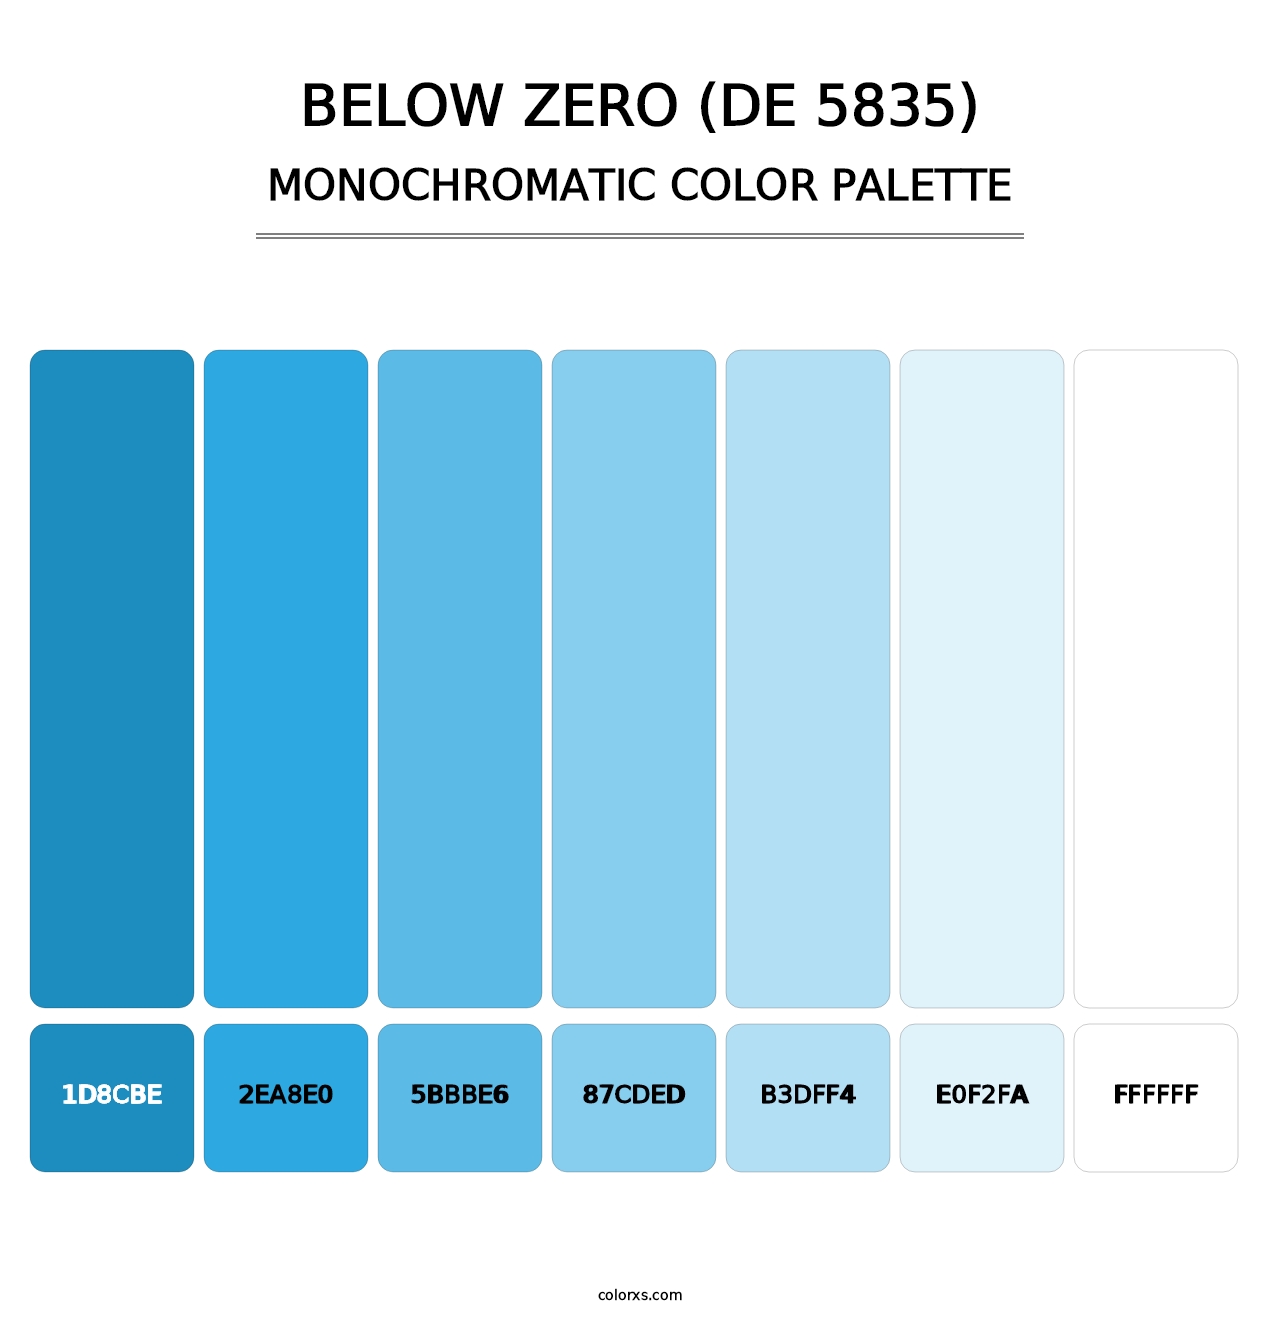 Below Zero (DE 5835) - Monochromatic Color Palette